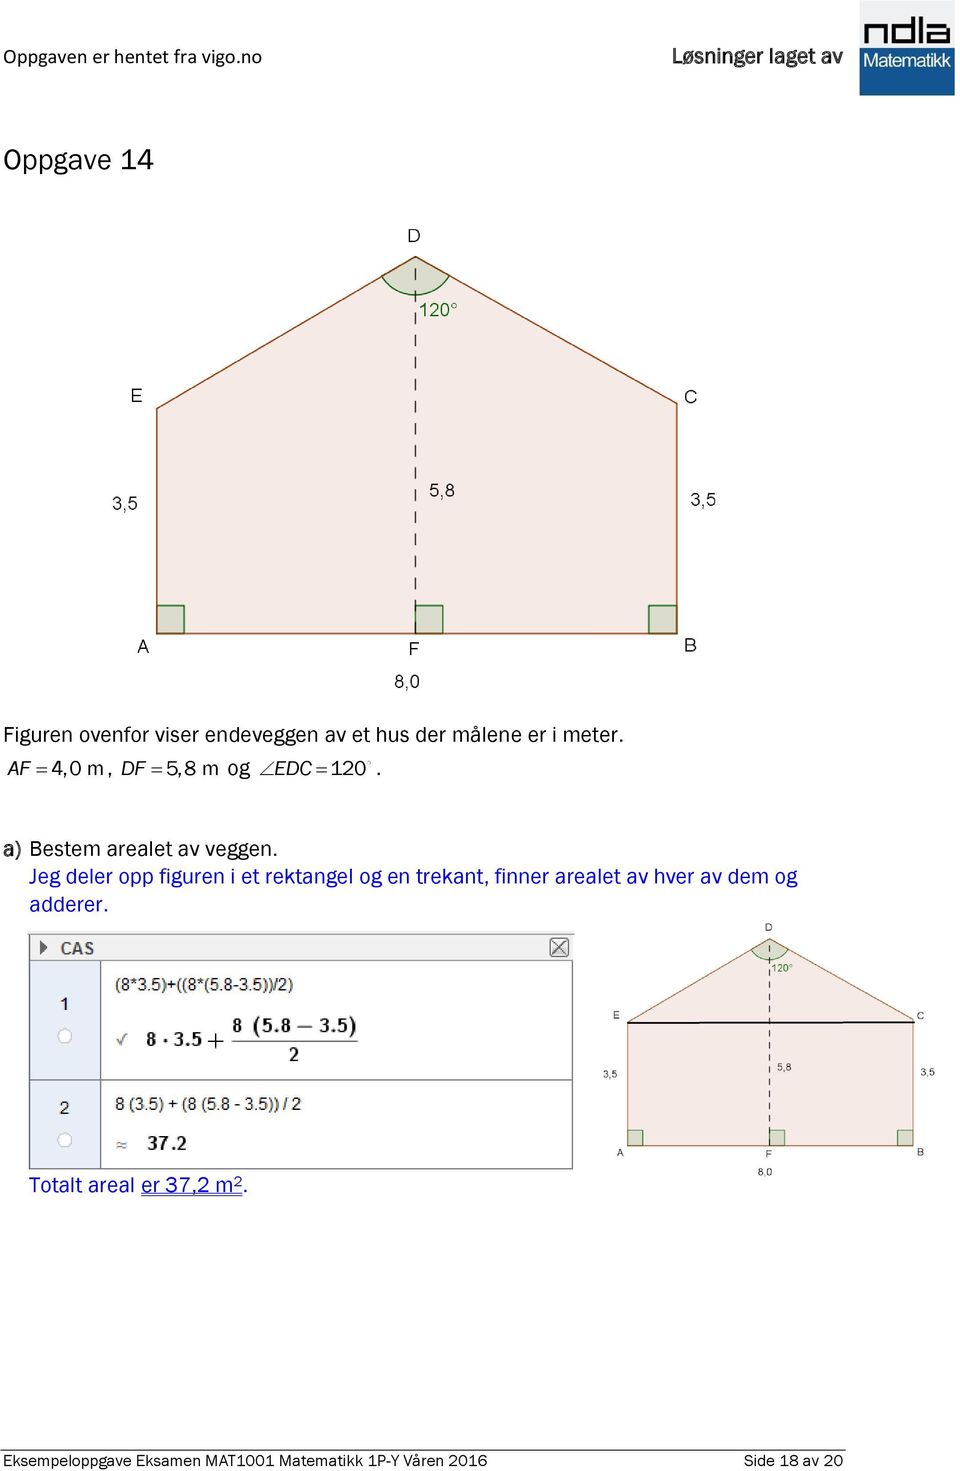 Jeg deler opp figuren i et rektangel og en trekant, finner arealet av hver av dem